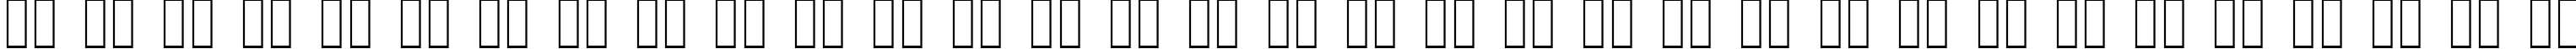 Пример написания русского алфавита шрифтом Quastic Kaps Thin